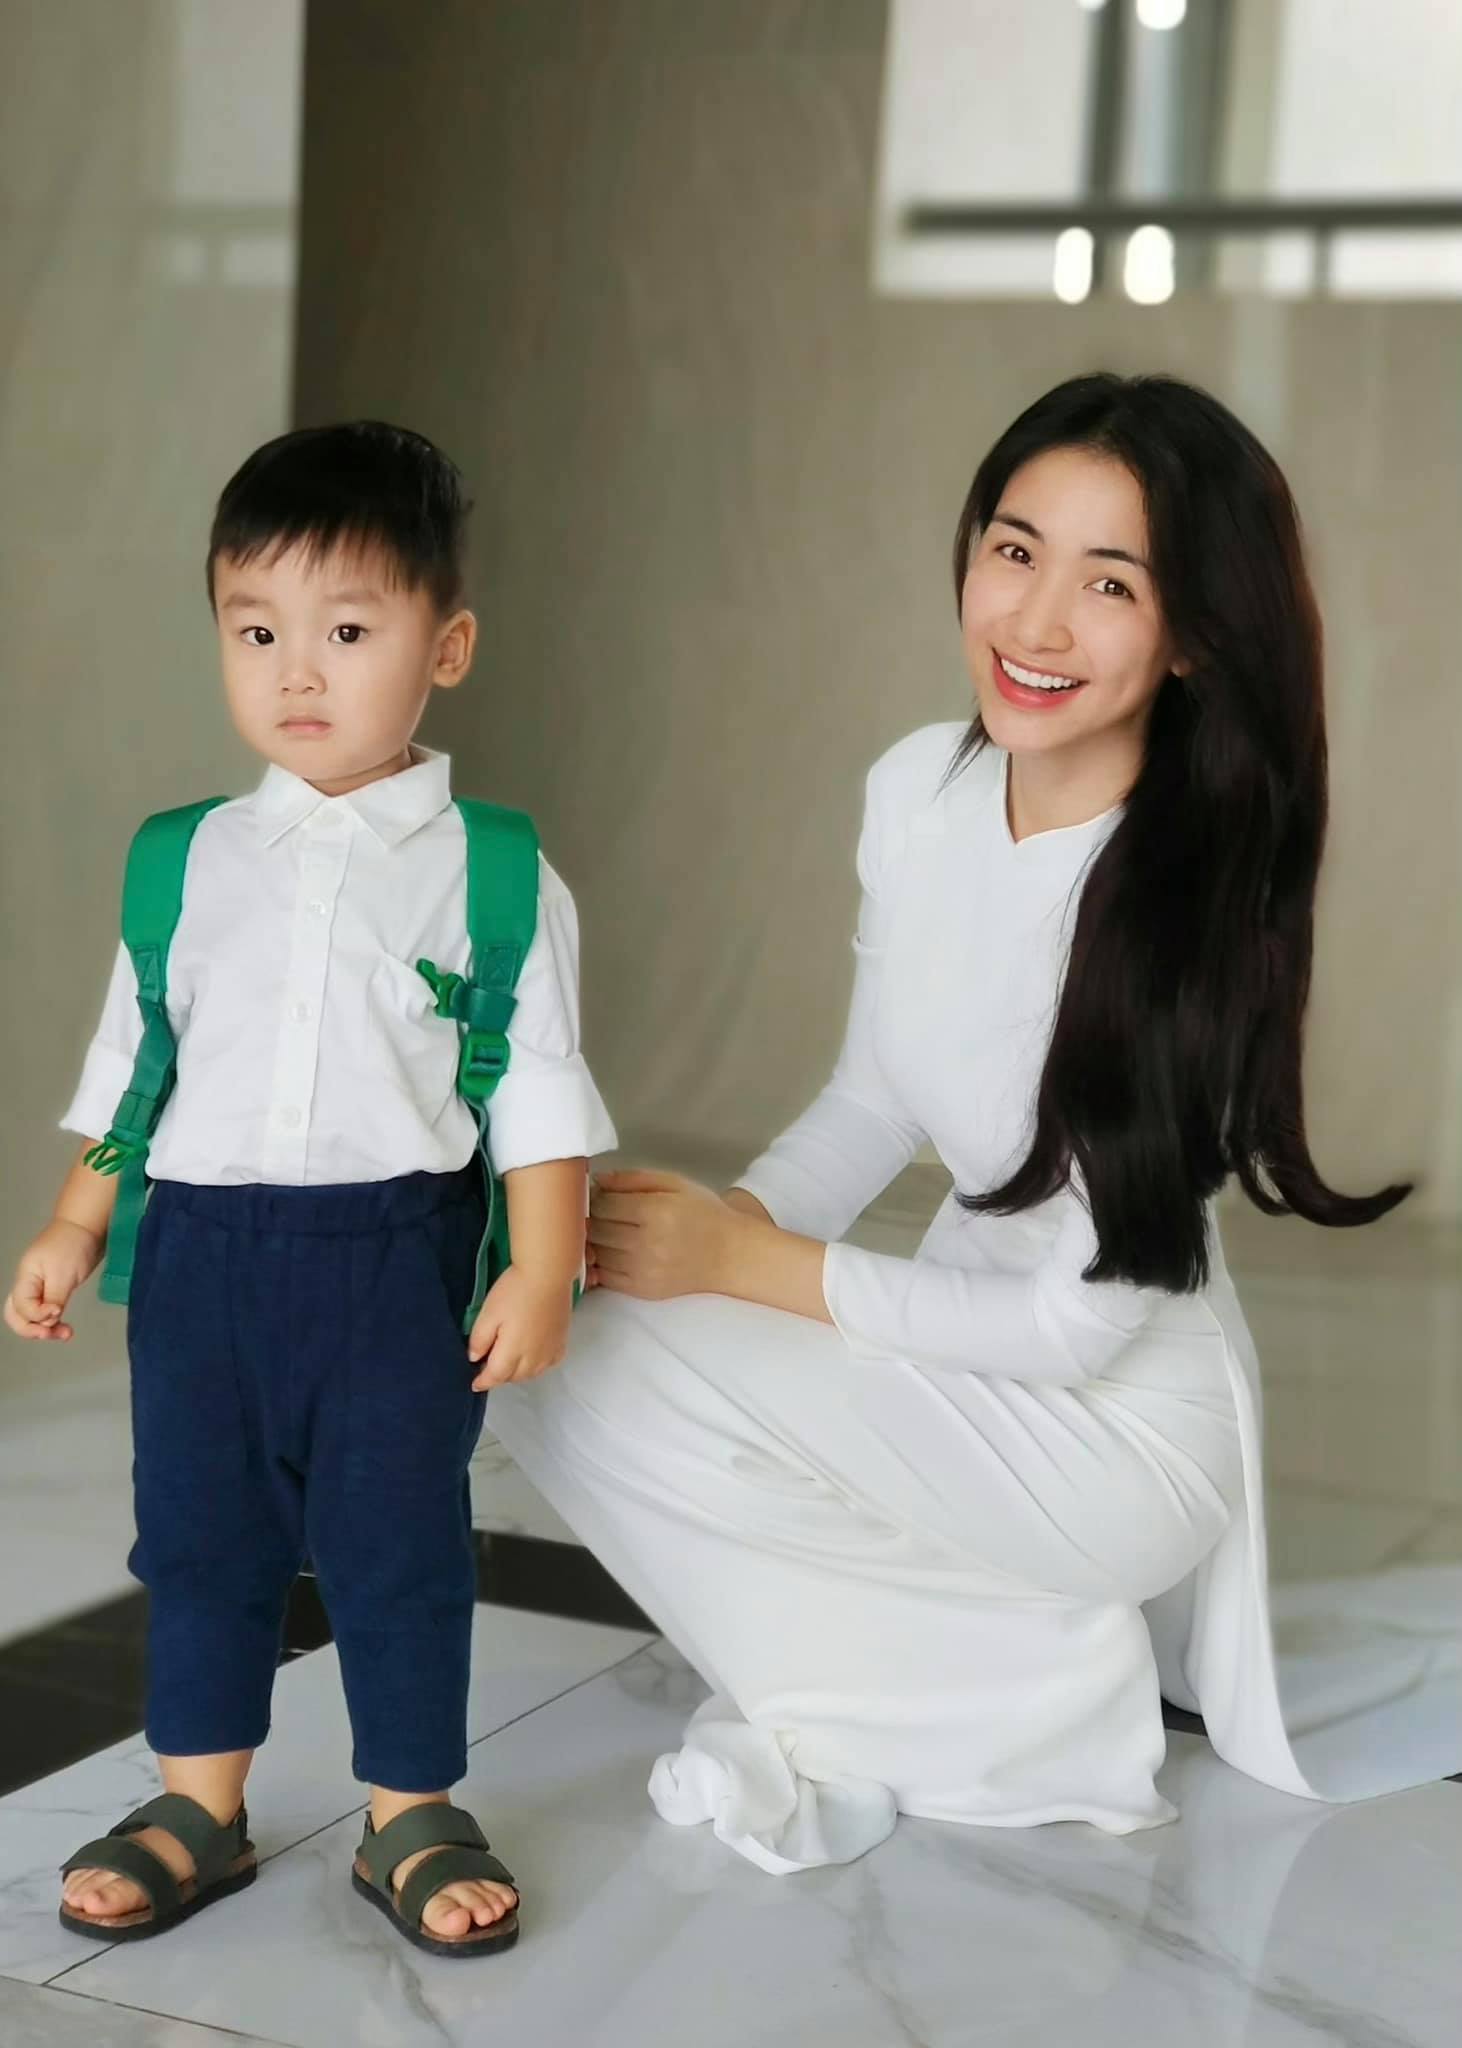 Hòa Minzy diện áo trắng, lên đồ bảnh bao cho con trai cưng nhân ngày tựu trường. Cô cho biết, con trai chưa đi học mà chỉ chụp ảnh ở nhà cho mọi người ngắm. Tuy nhiên, cậu bé vẫn vô cùng ra dáng ở tuổi lên 2.